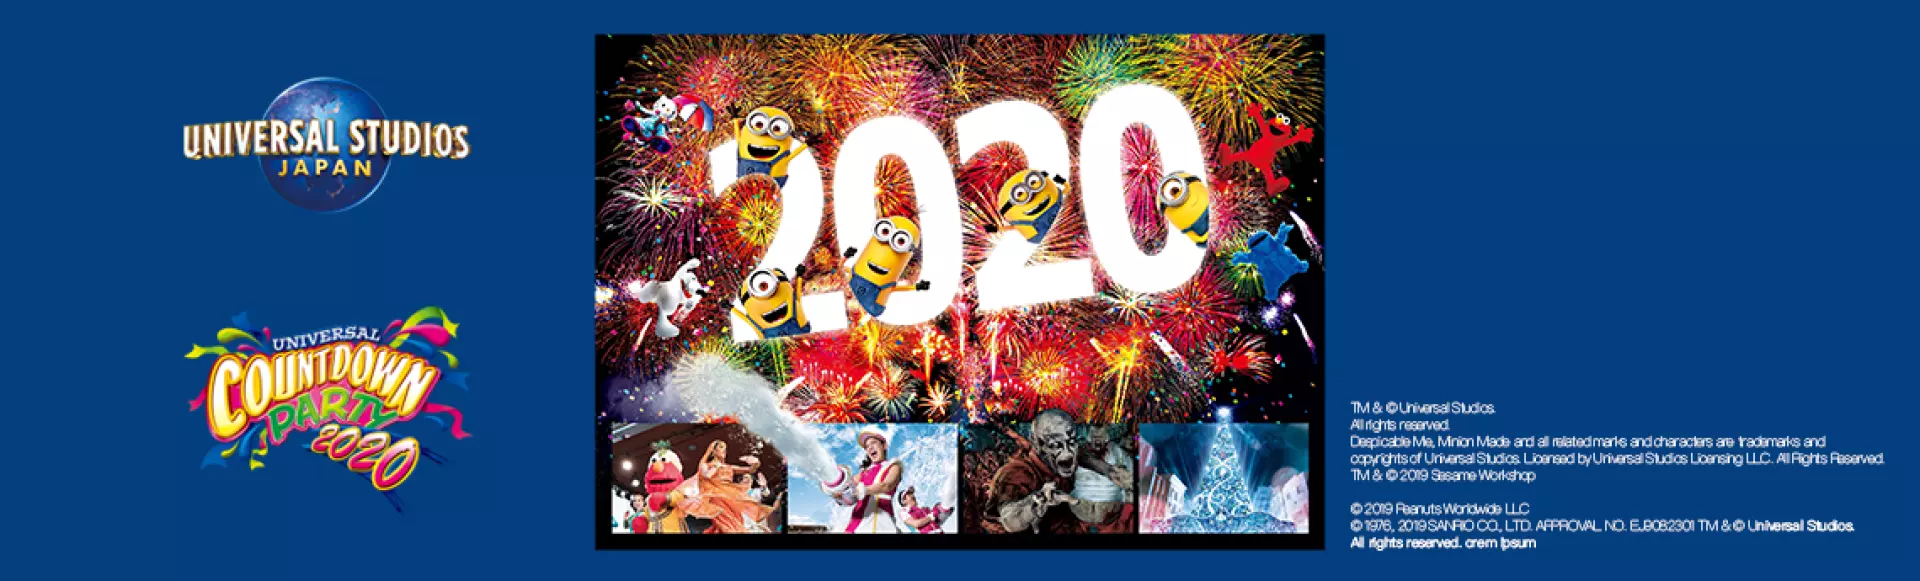 【2020 日本跨年】日本環球影城跨年派對門票+特別特快入場券3